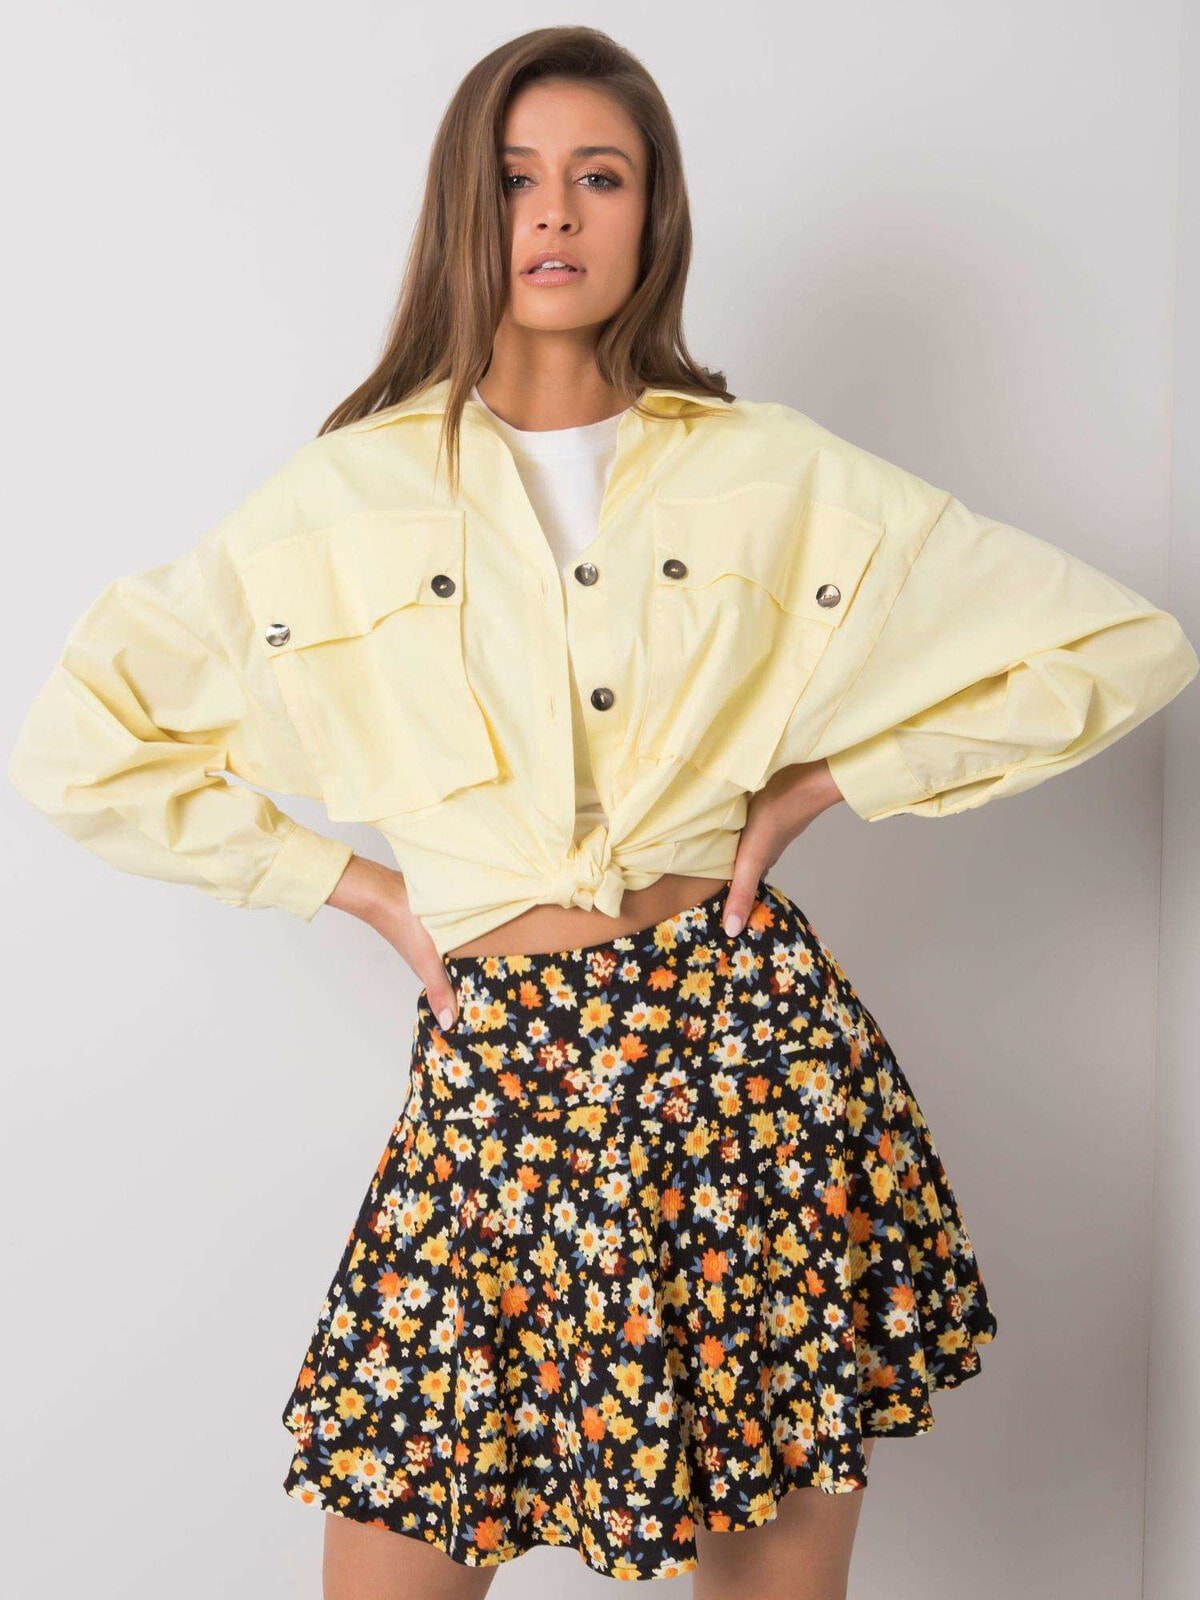 Женская рубашка свободного кроя с карманами и длинным рукавом желтая Factory Price